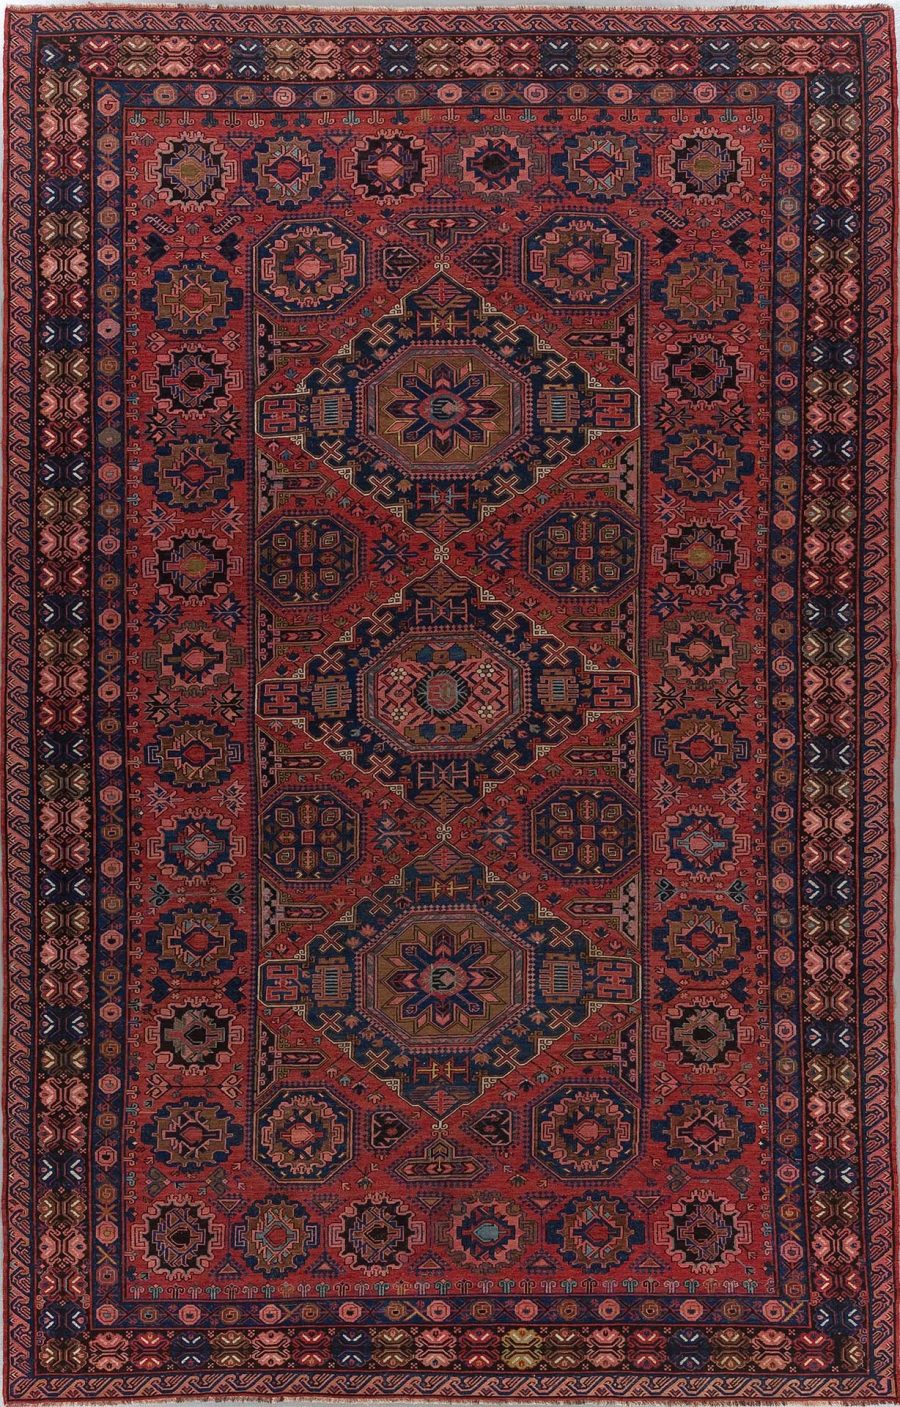 Traditioneller handgeknüpfter Teppich mit komplexen geometrischen Mustern und Medaillons in Rot-, Blau- und Beigetönen, umgeben von mehrfachen Bordüren.